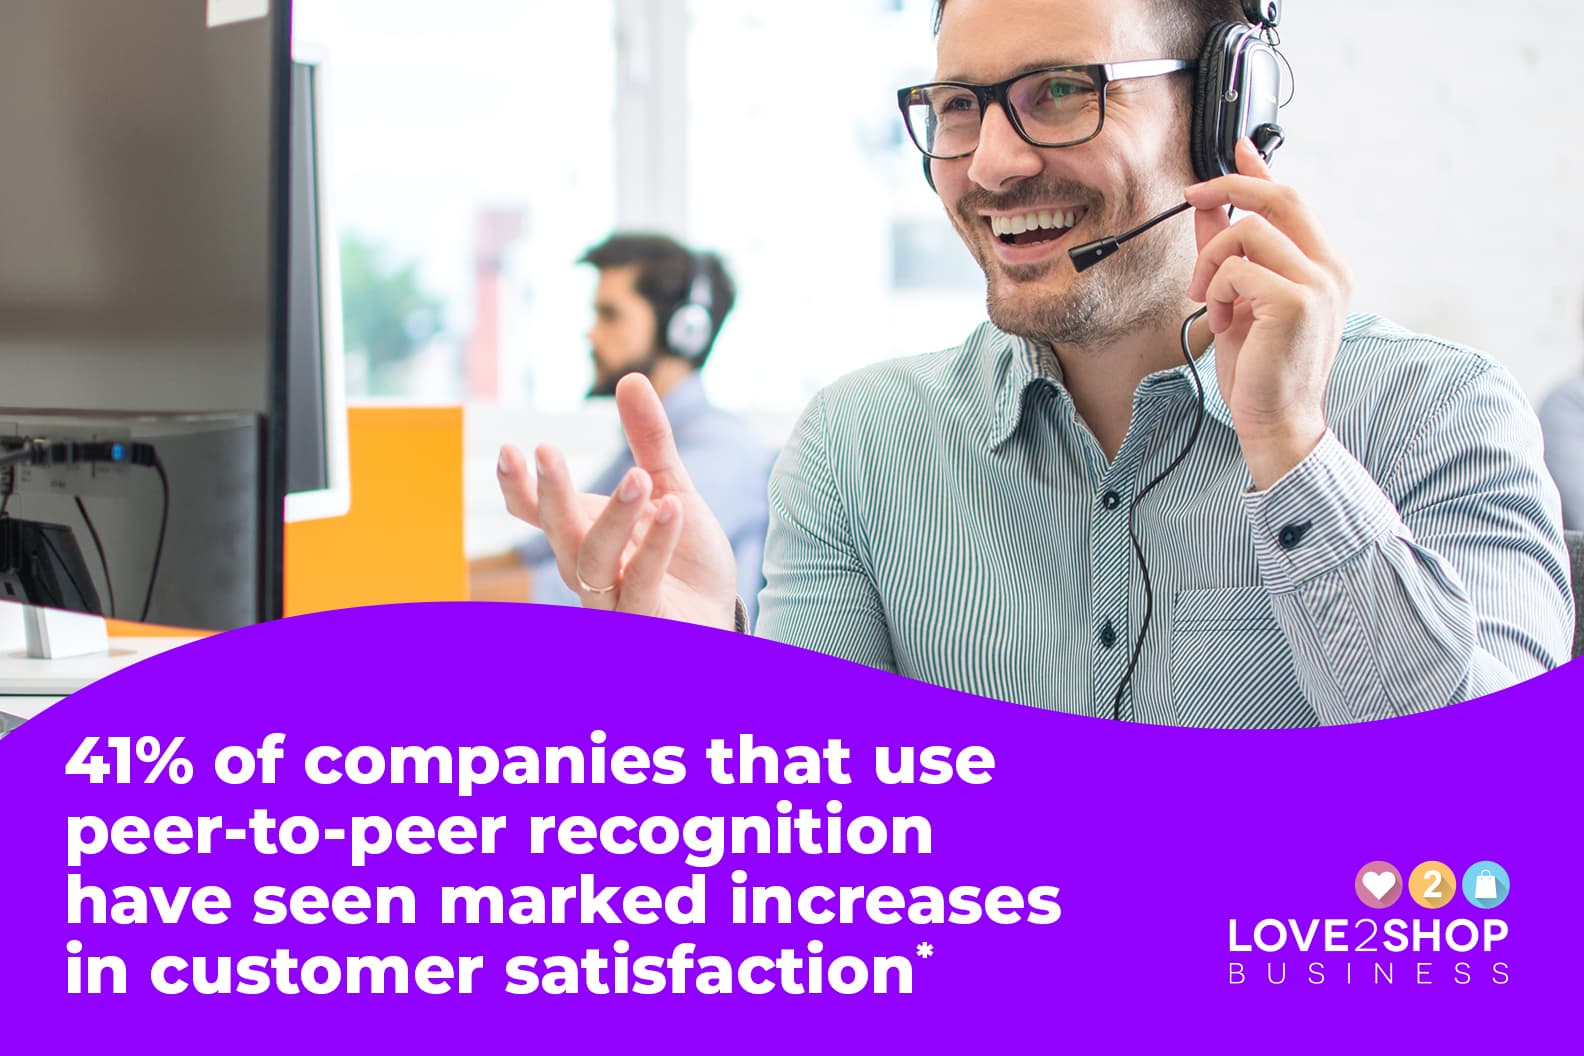 Appreciation improves customer satisfaction